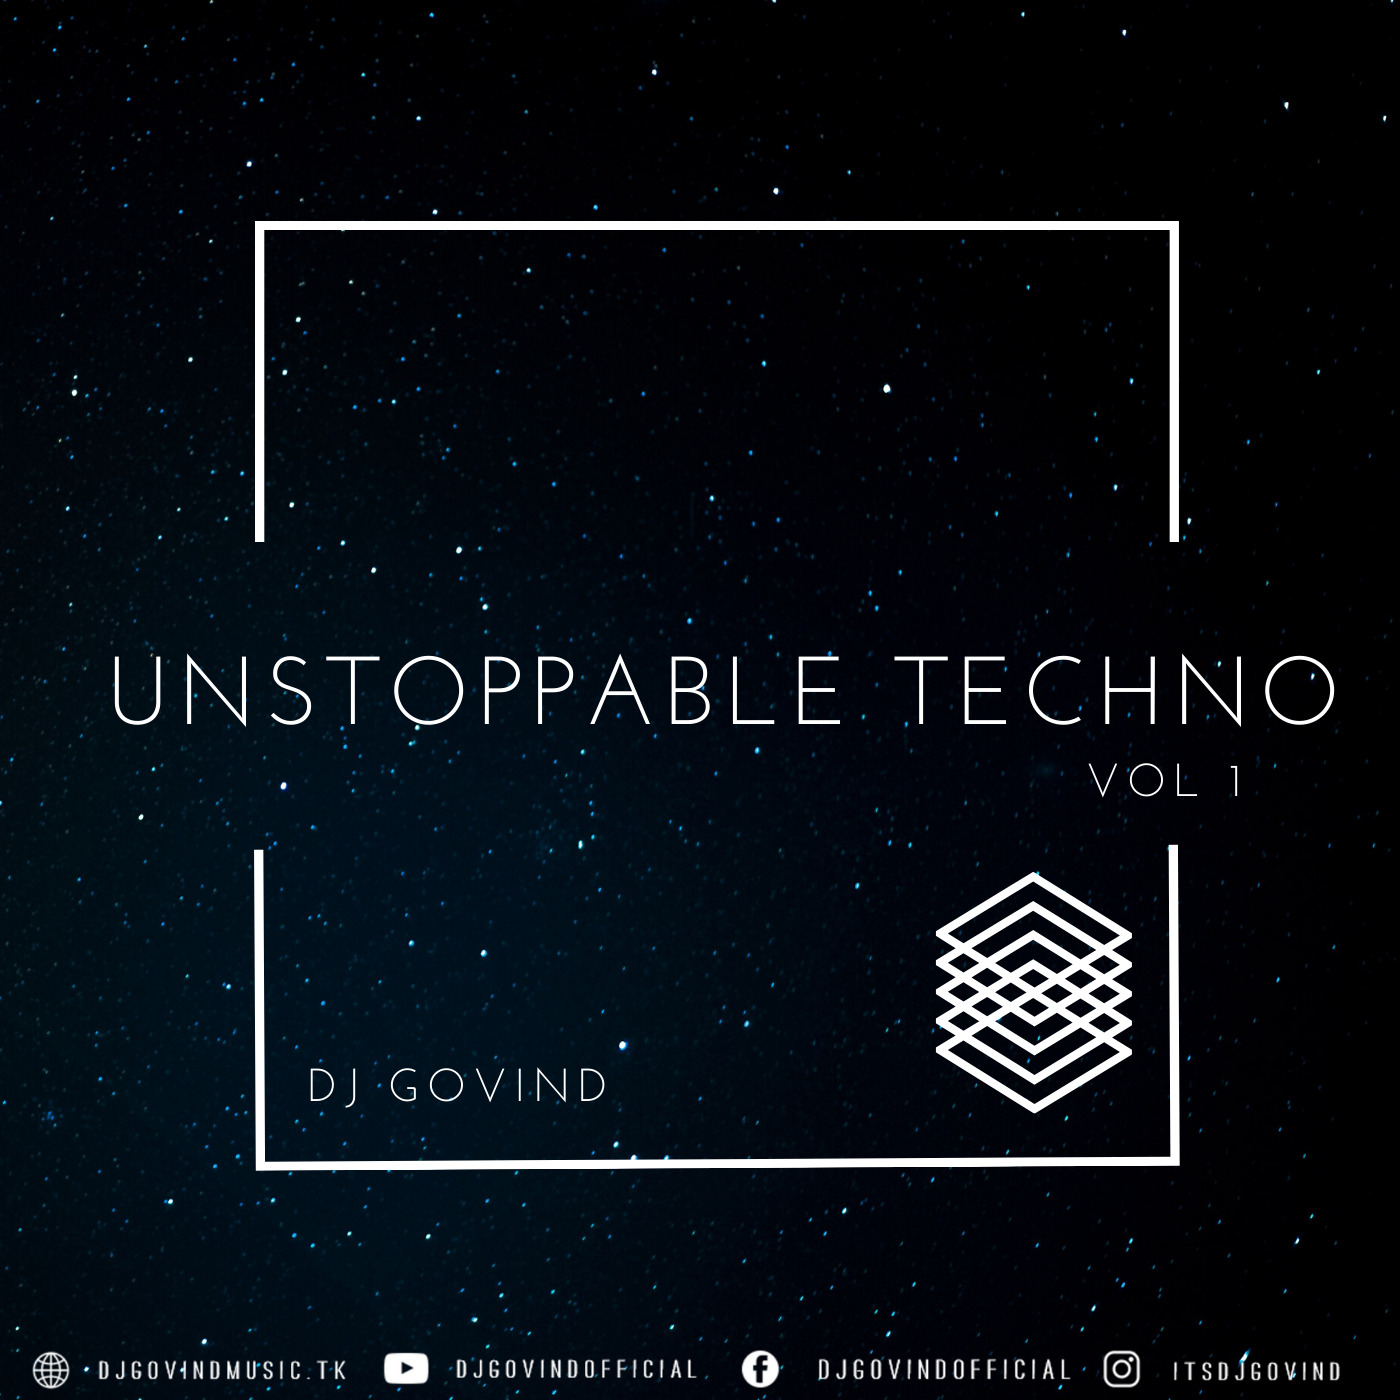 Unstoppable Techno Vol. 1